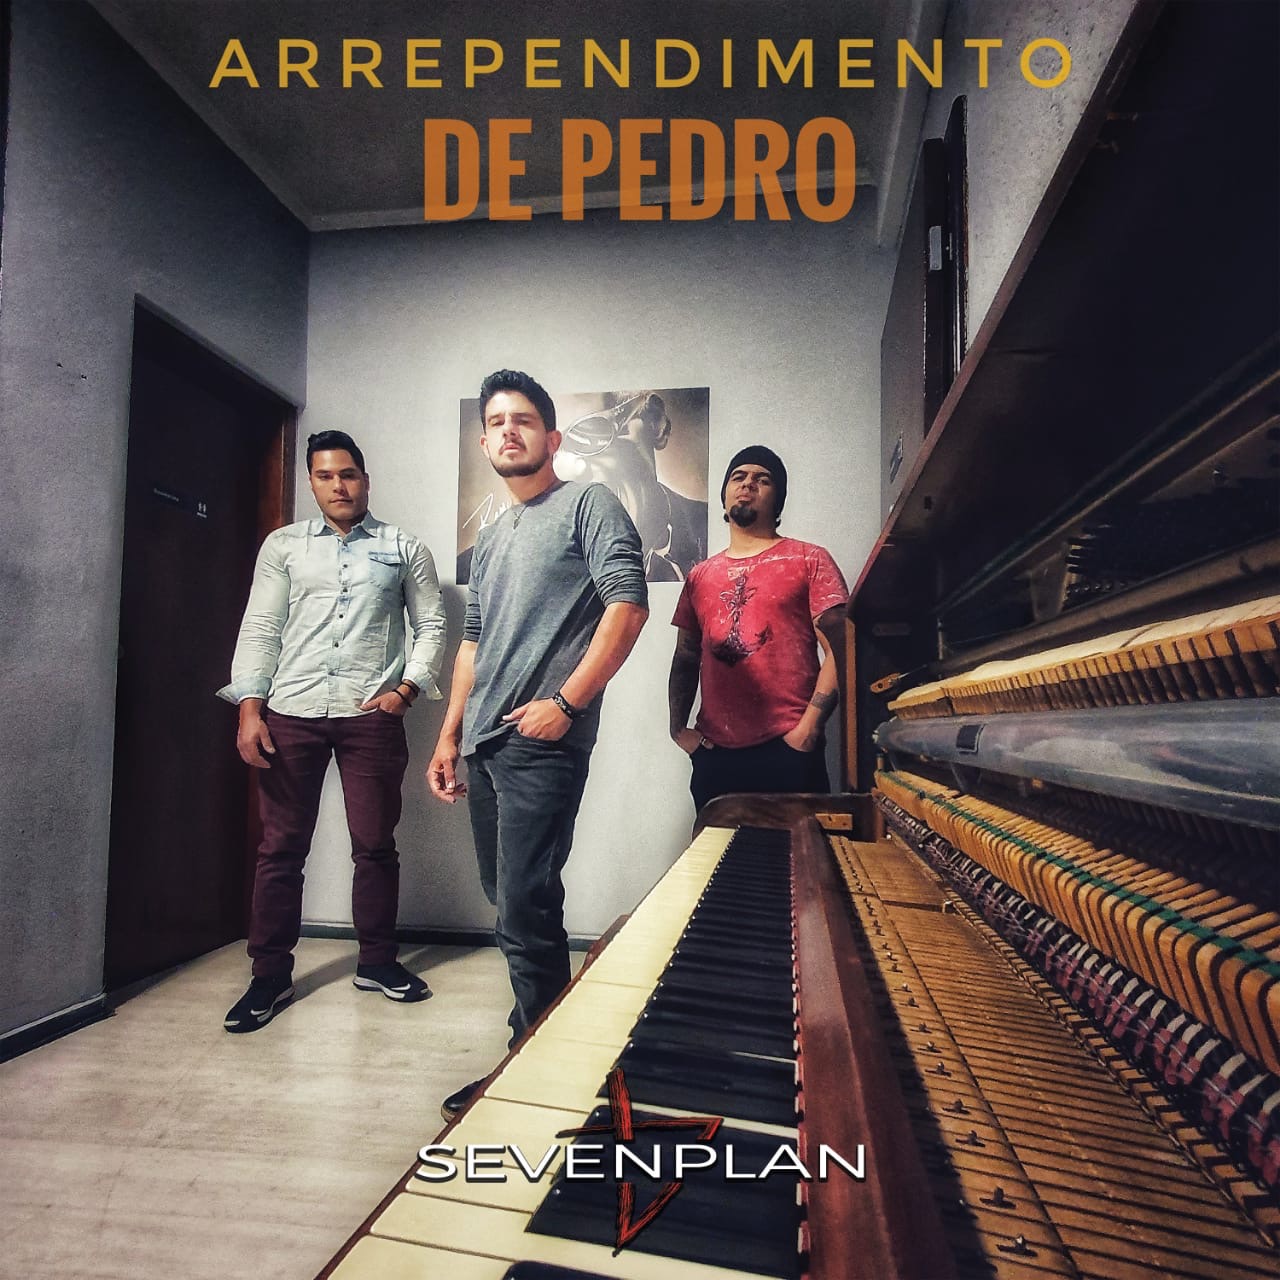 Sevenplan lança “Arrependimento de Pedro” a quarta canção do novo EP